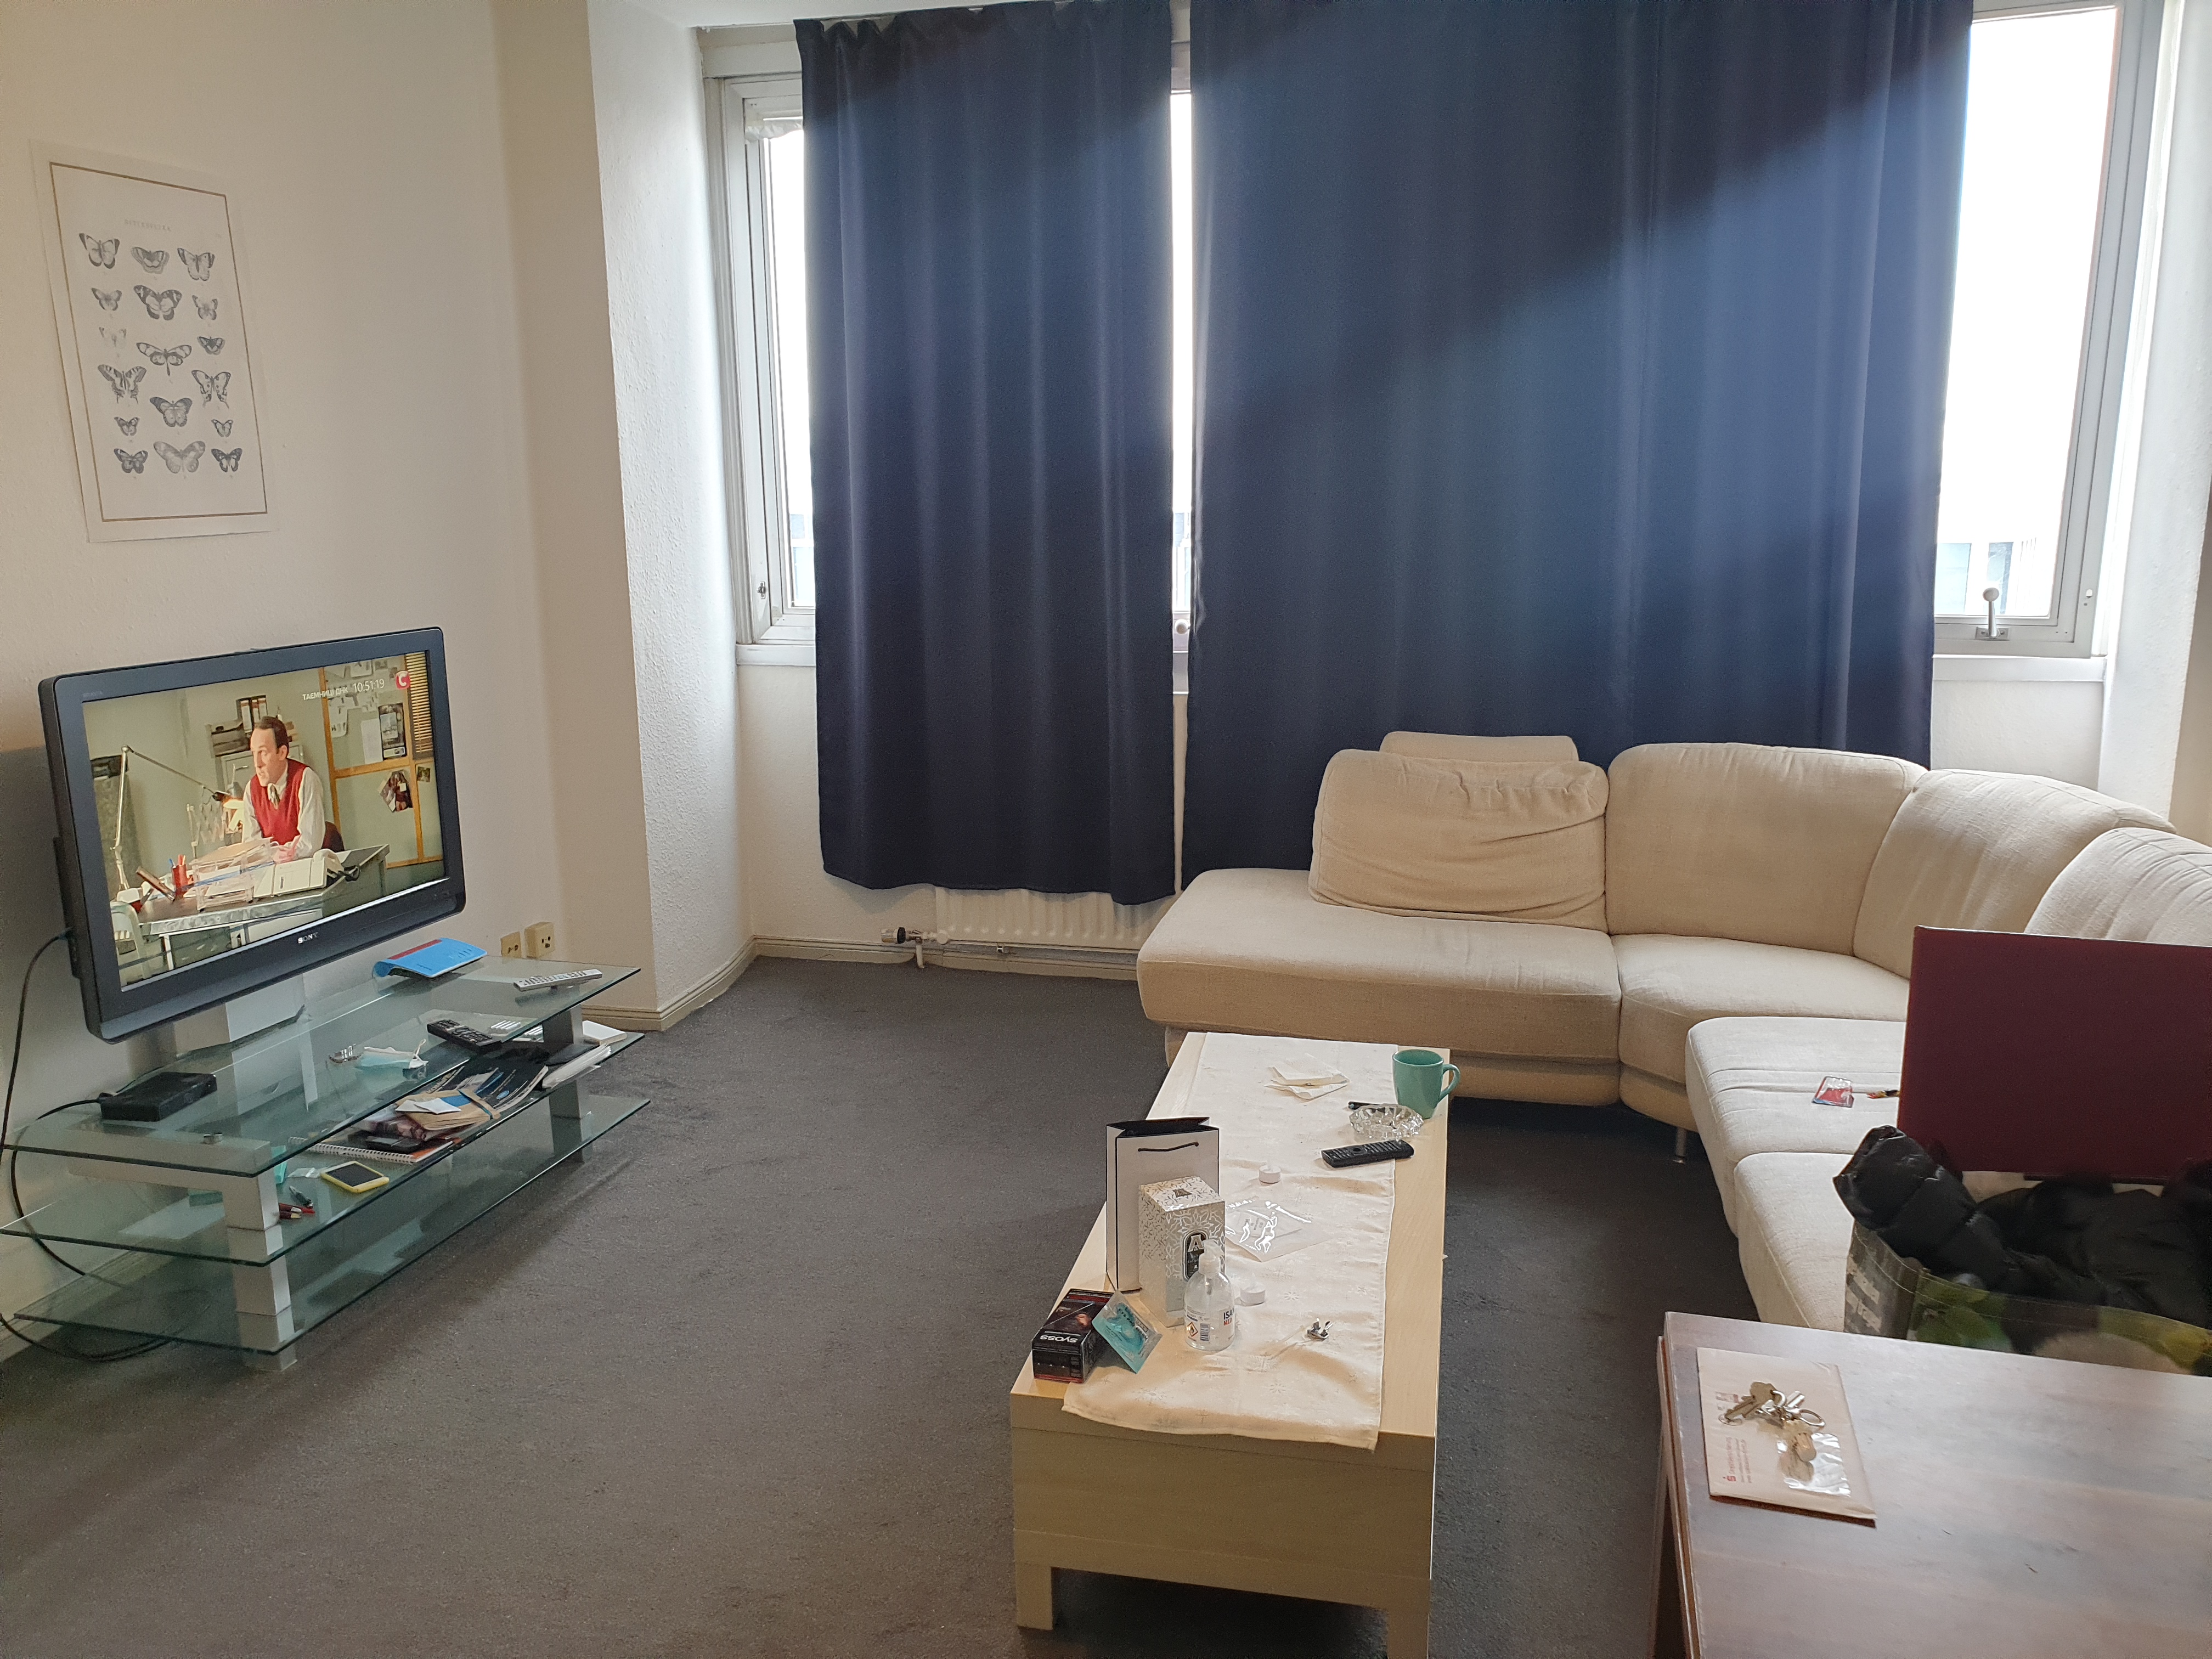 Недвижимость в магдебурге: аренда и покупка